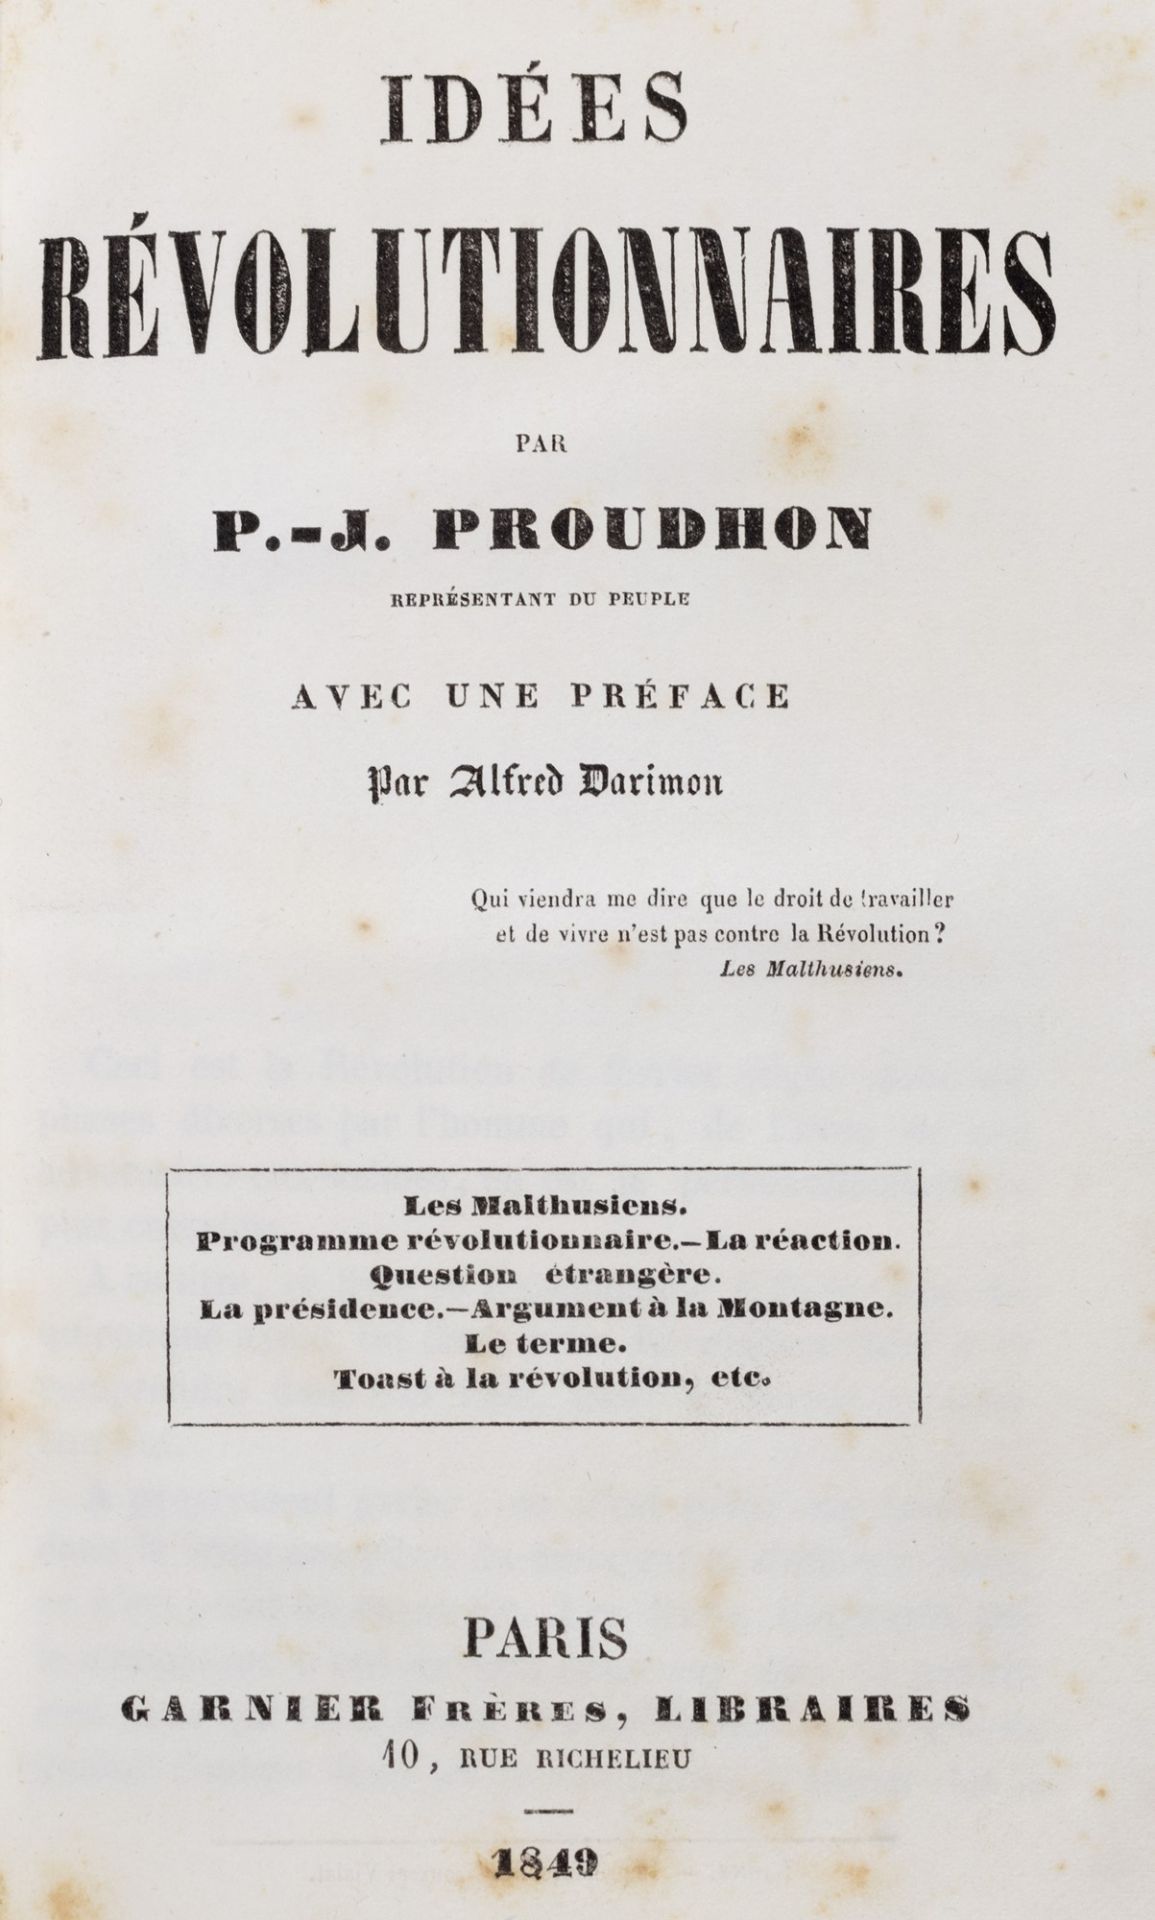 Anarchismo - Proudhon, Pierre-Joseph - Idées révolutionnaires